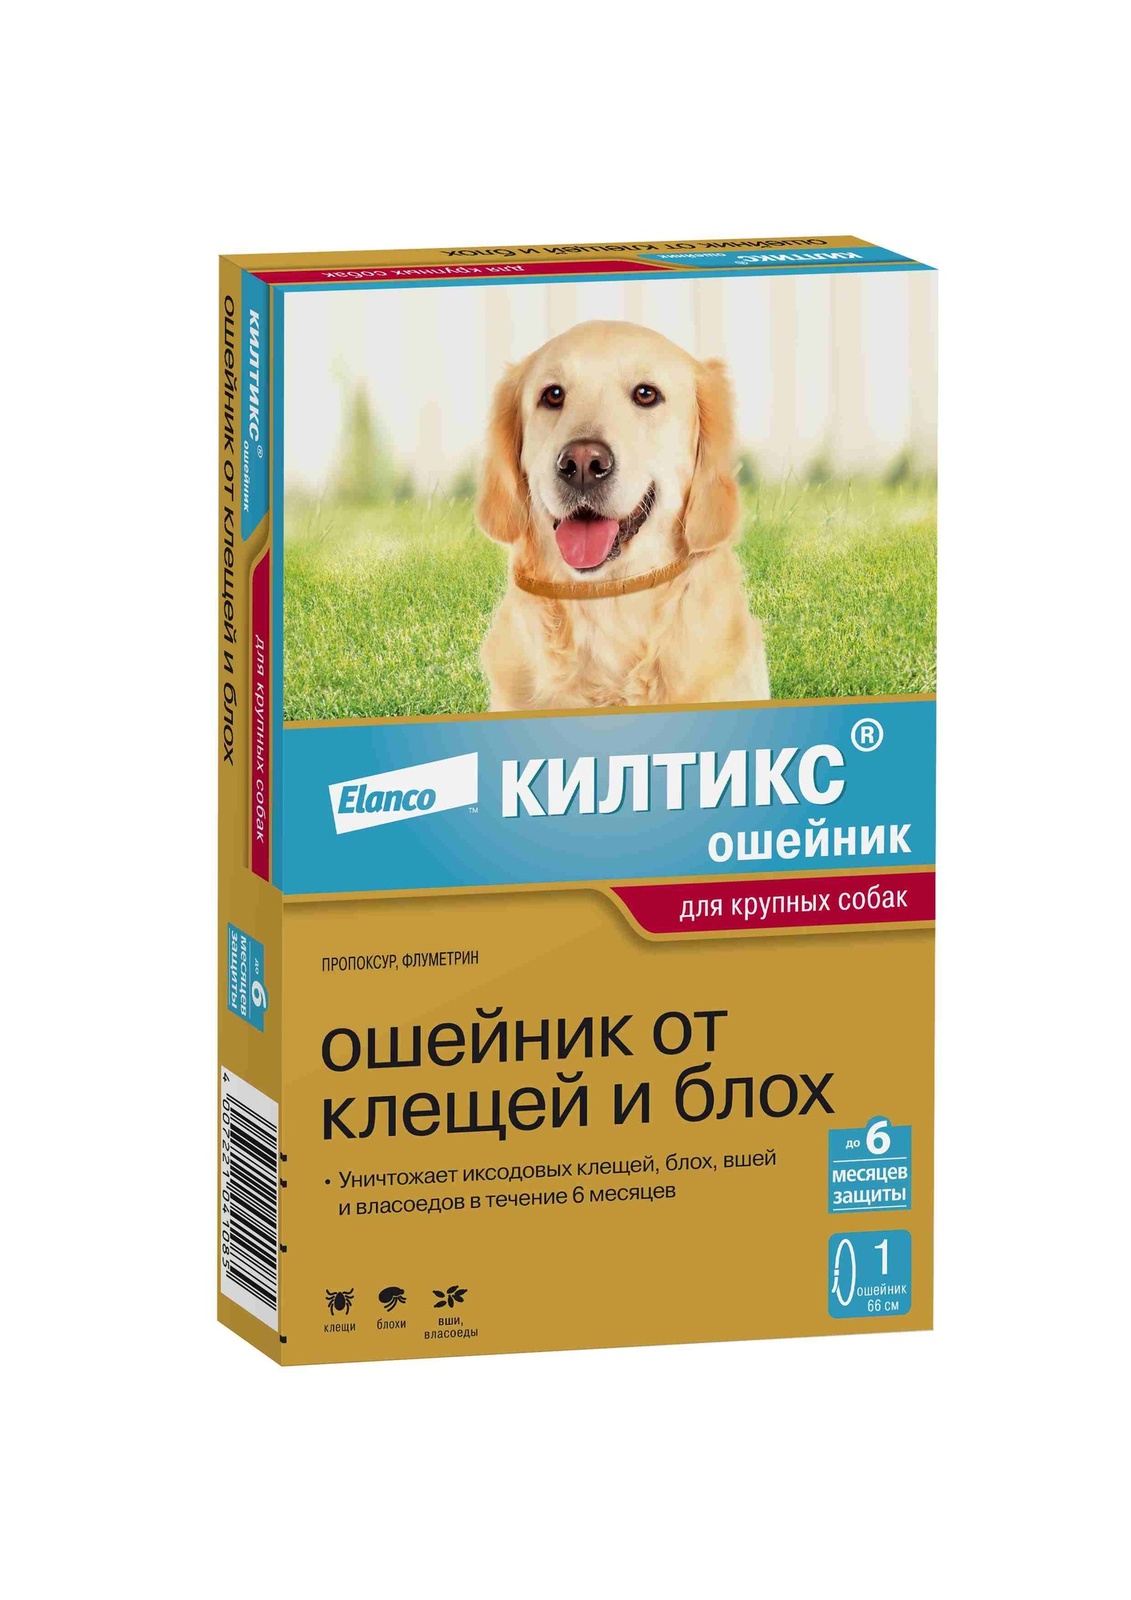 Elanco ошейник Килтикс® от клещей и блох для собак крупных пород (10 г)